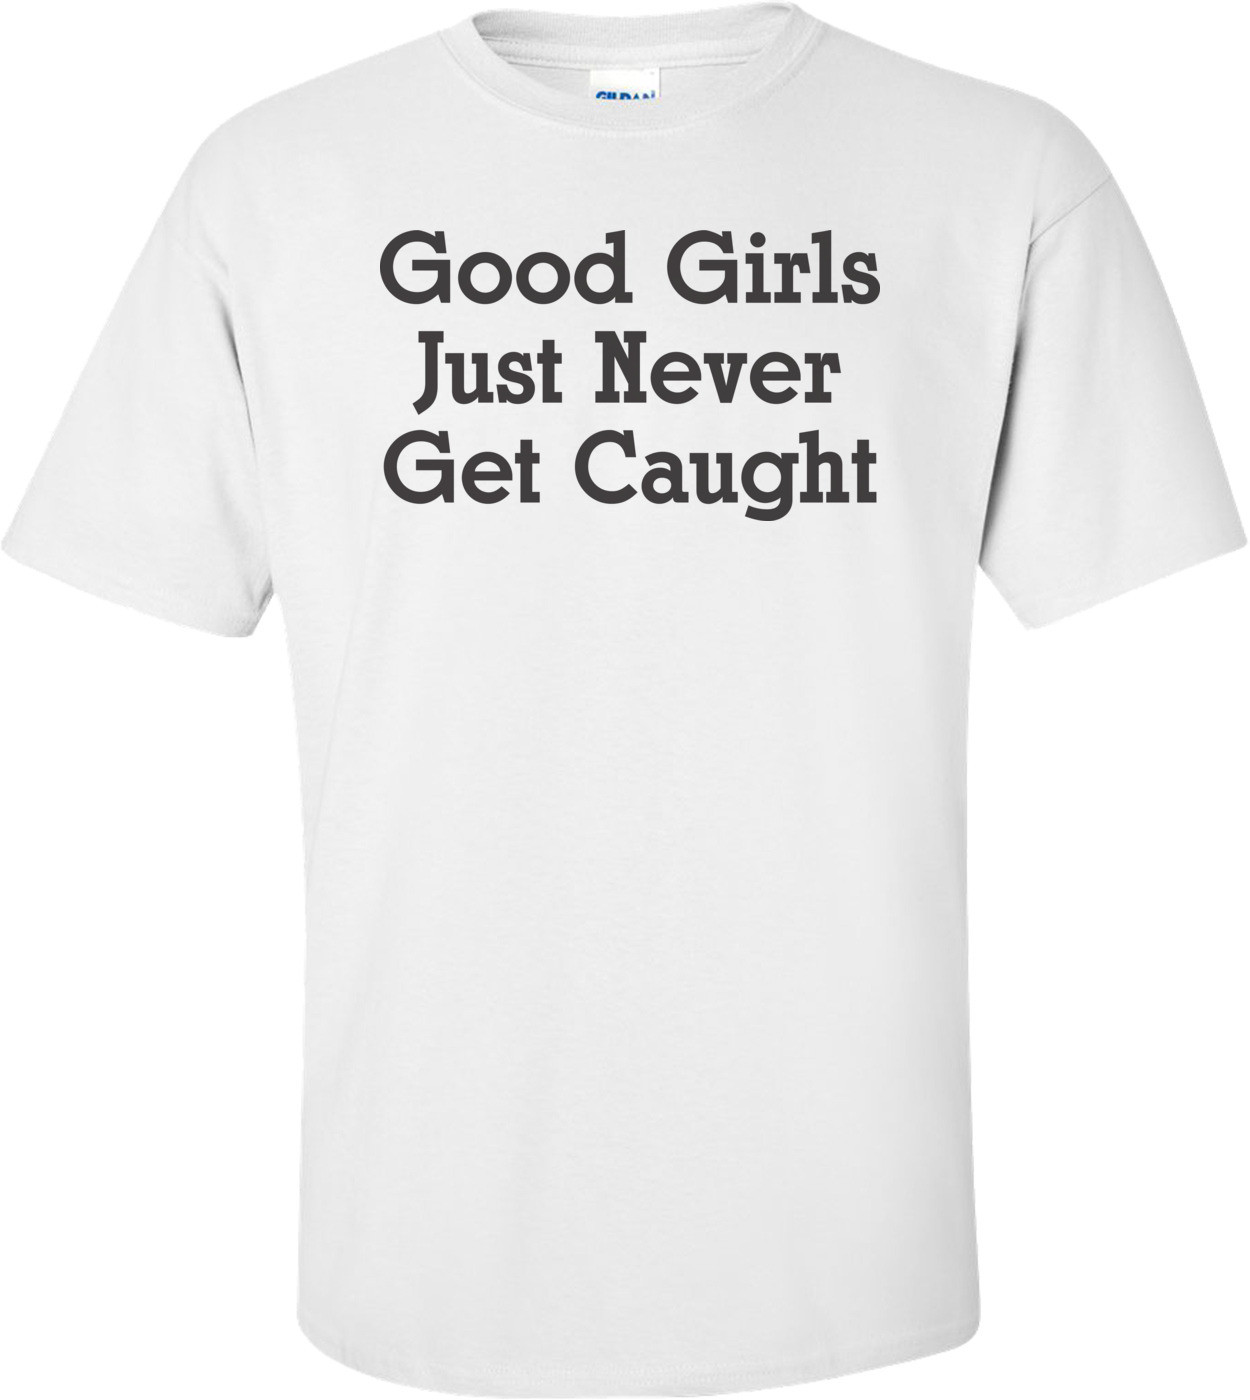 Good Girls Just Never Get Caught T-shirt